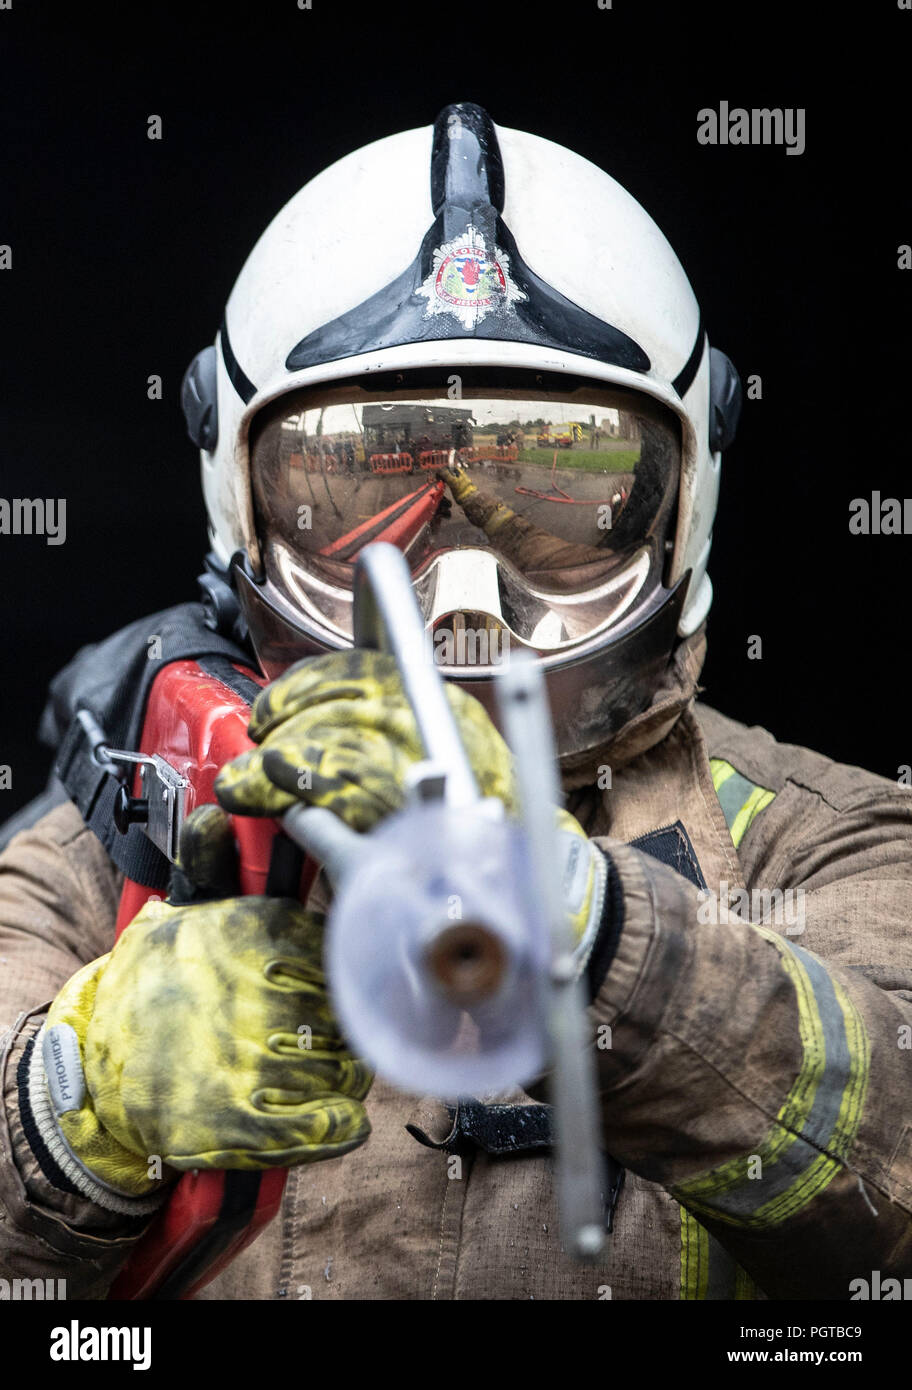 Paul Halliday, directeur de surveillance des pompiers du Scottish Fire and Rescue Service, au National Training Center de Glasgow, fait la démonstration d'une lance à très haute pression, appelée « Coldcut Cobra », qui permettra aux pompiers de souffler un coupe-feu à travers le mur d'un bâtiment en feu. Banque D'Images